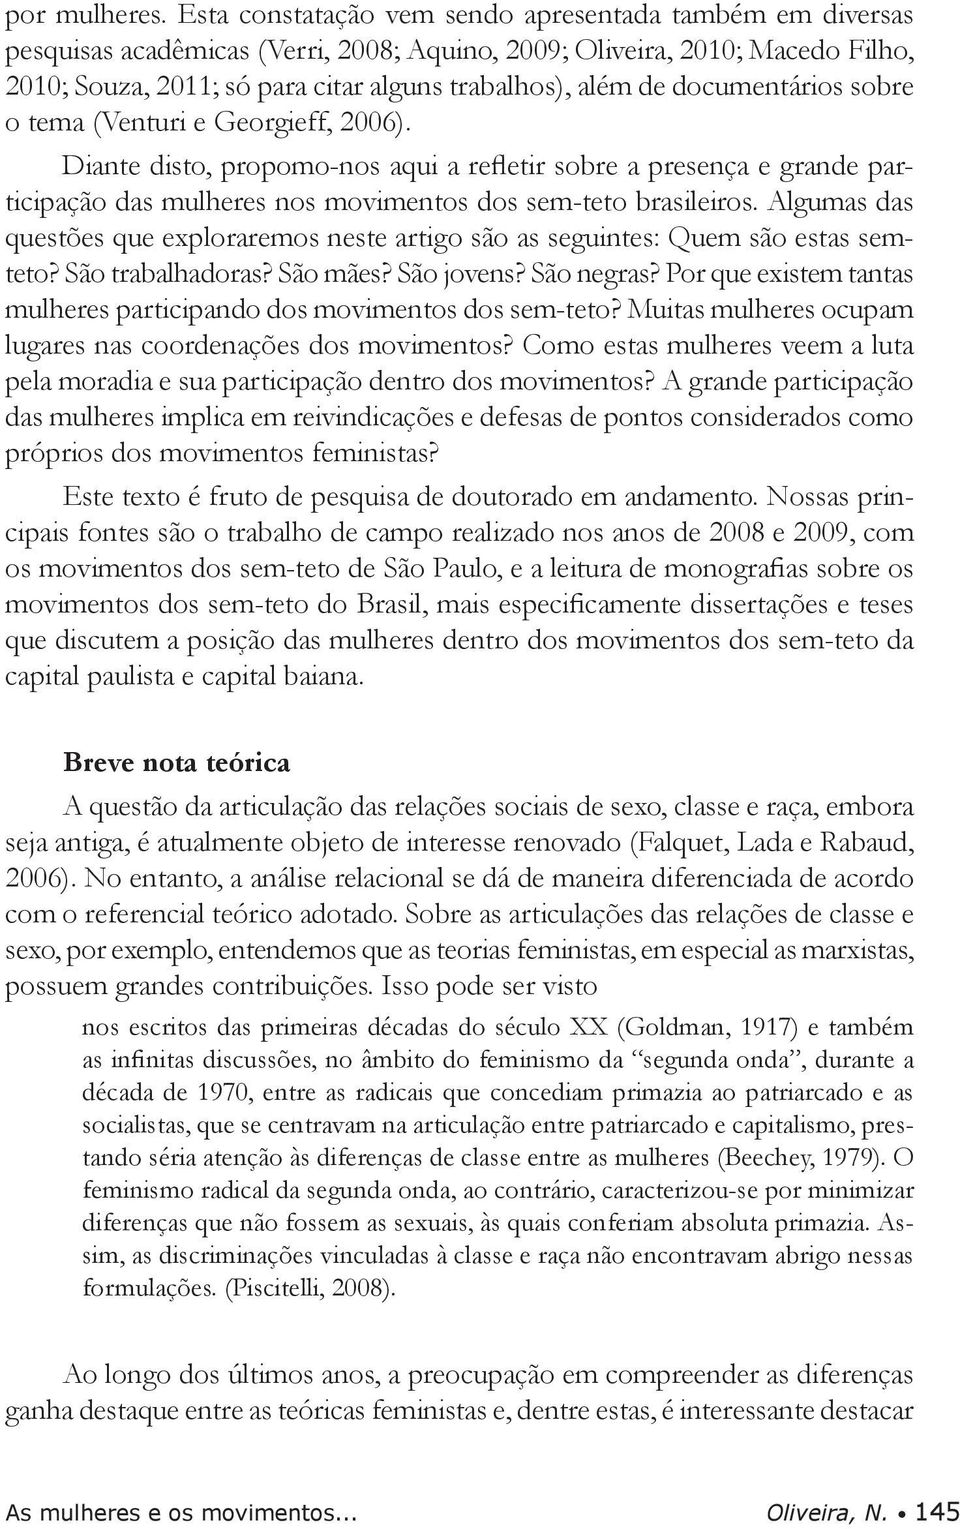 documentários sobre o tema (Venturi e Georgieff, 2006). Diante disto, propomo-nos aqui a refletir sobre a presença e grande participação das mulheres nos movimentos dos sem-teto brasileiros.